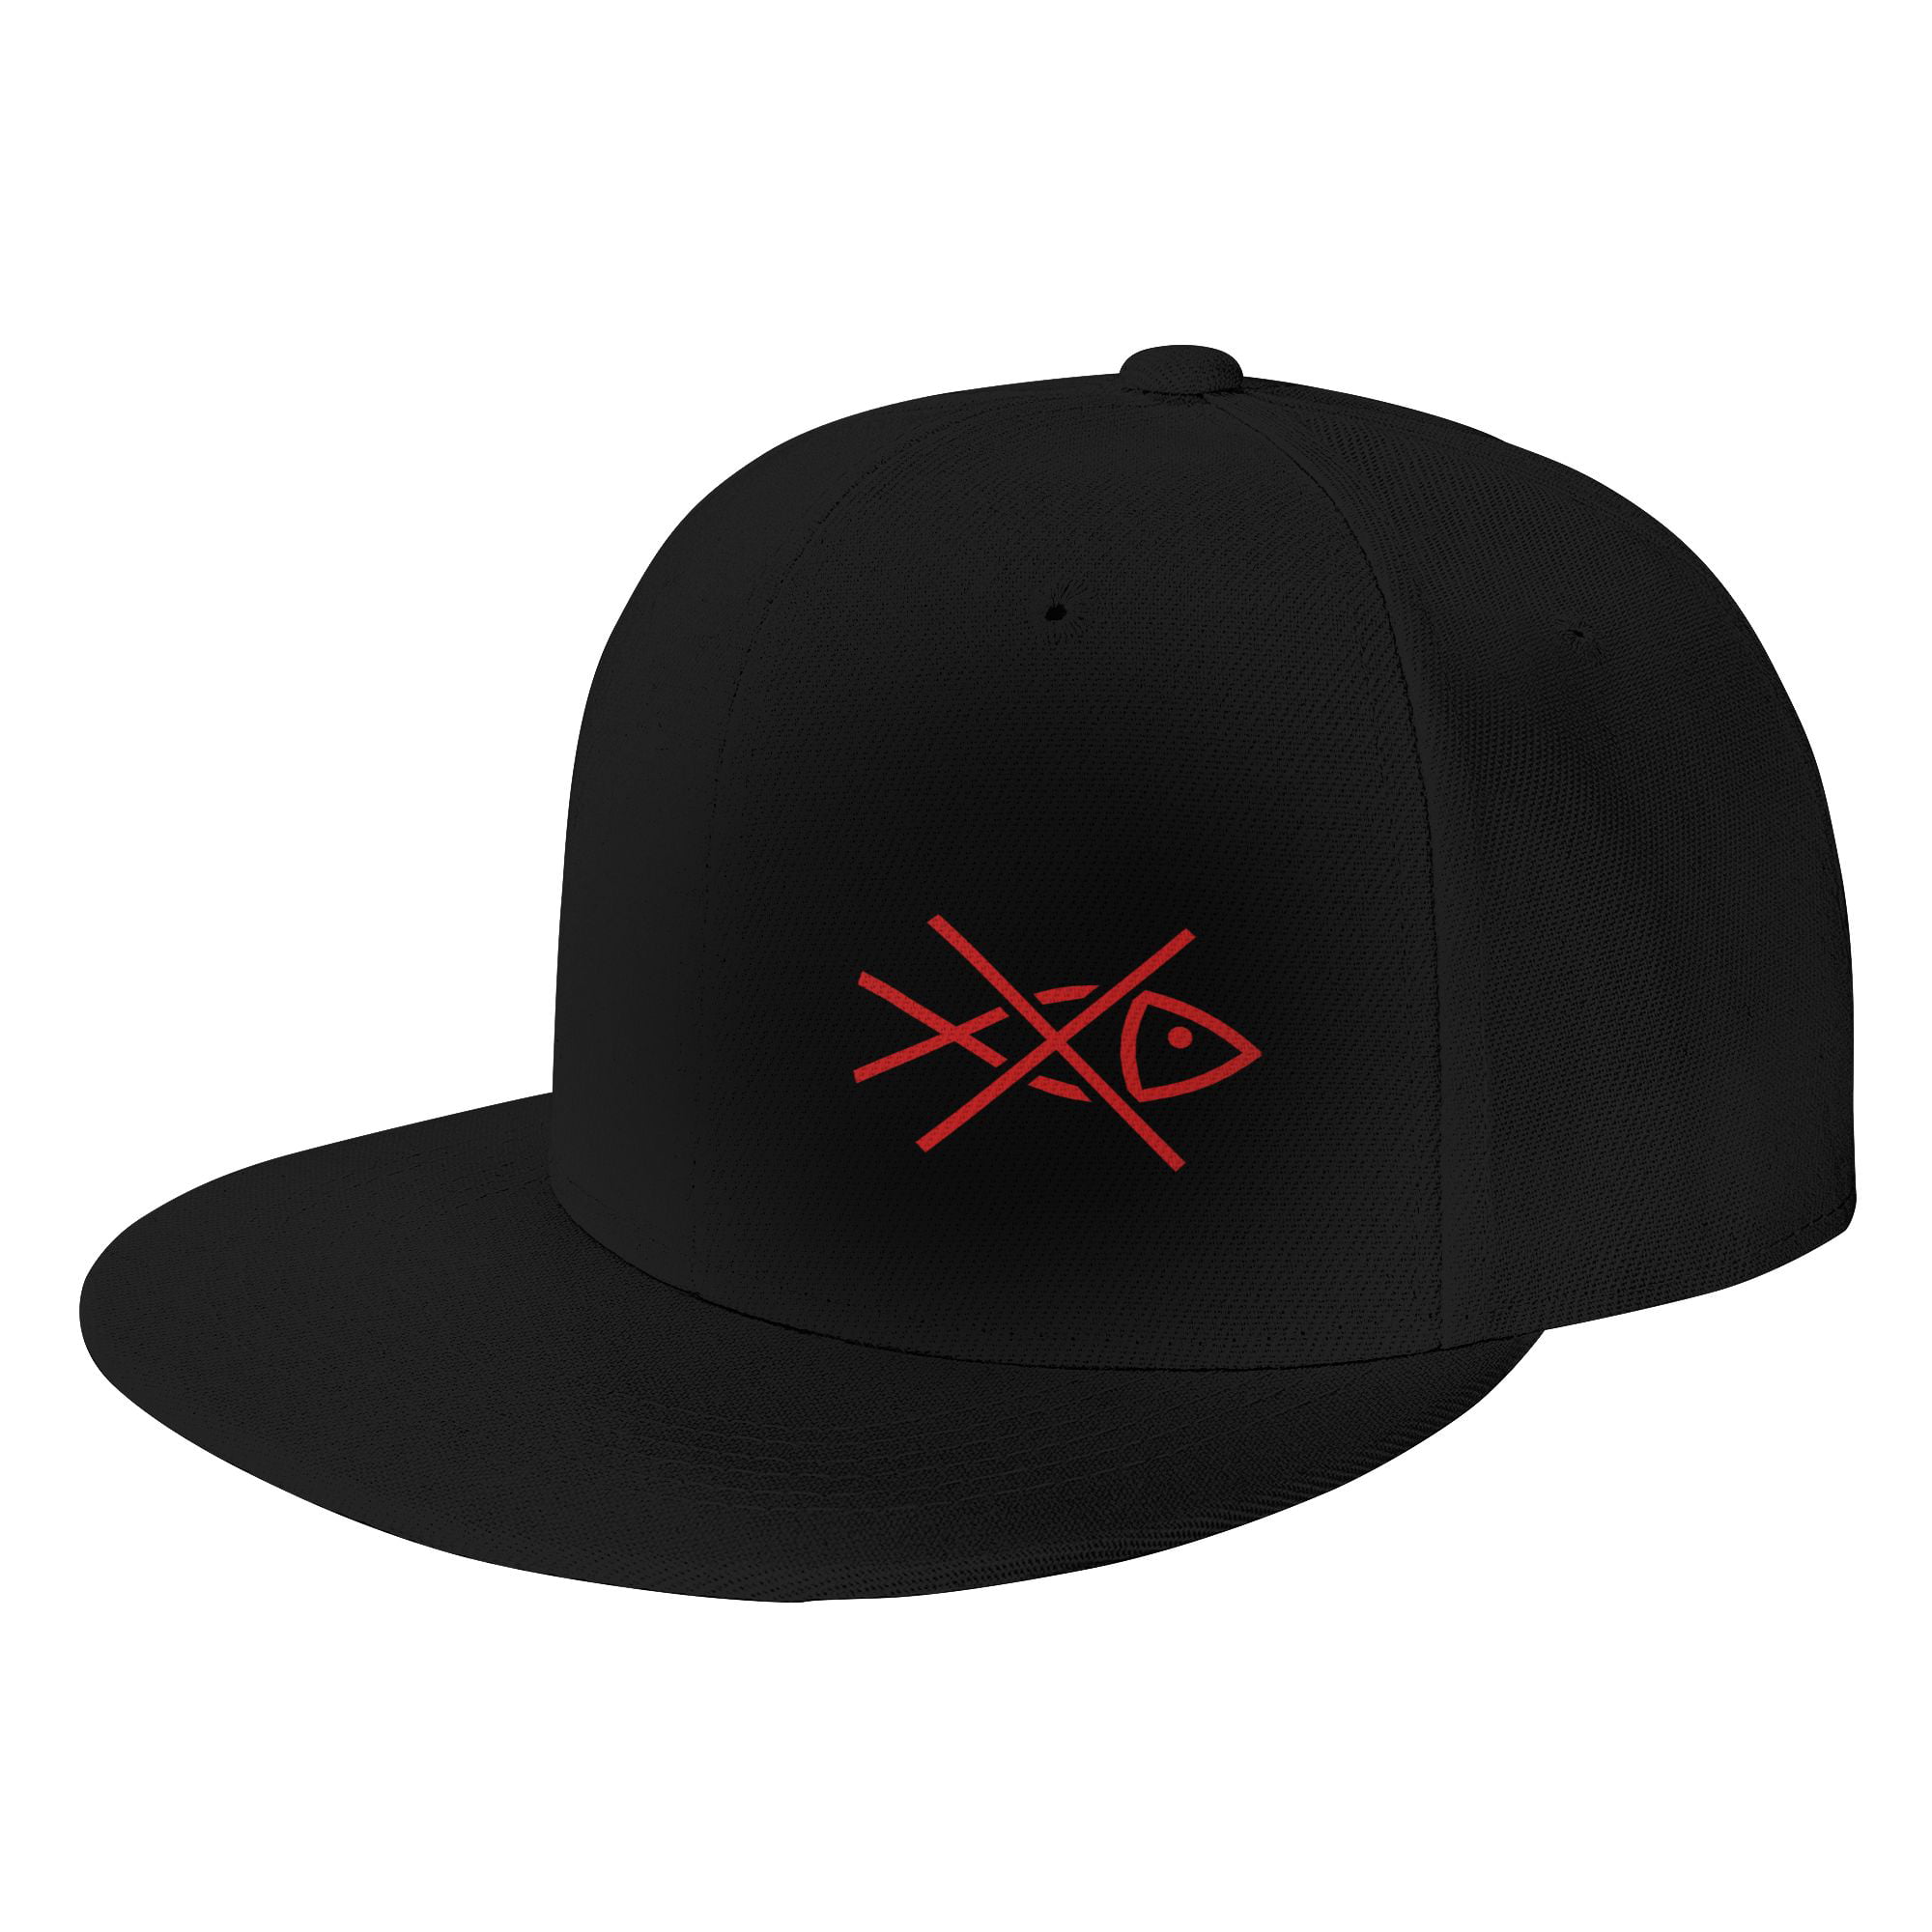 DouZhe Flat Brim Cap Snapback Hat, No Fishing Prints Adjustable